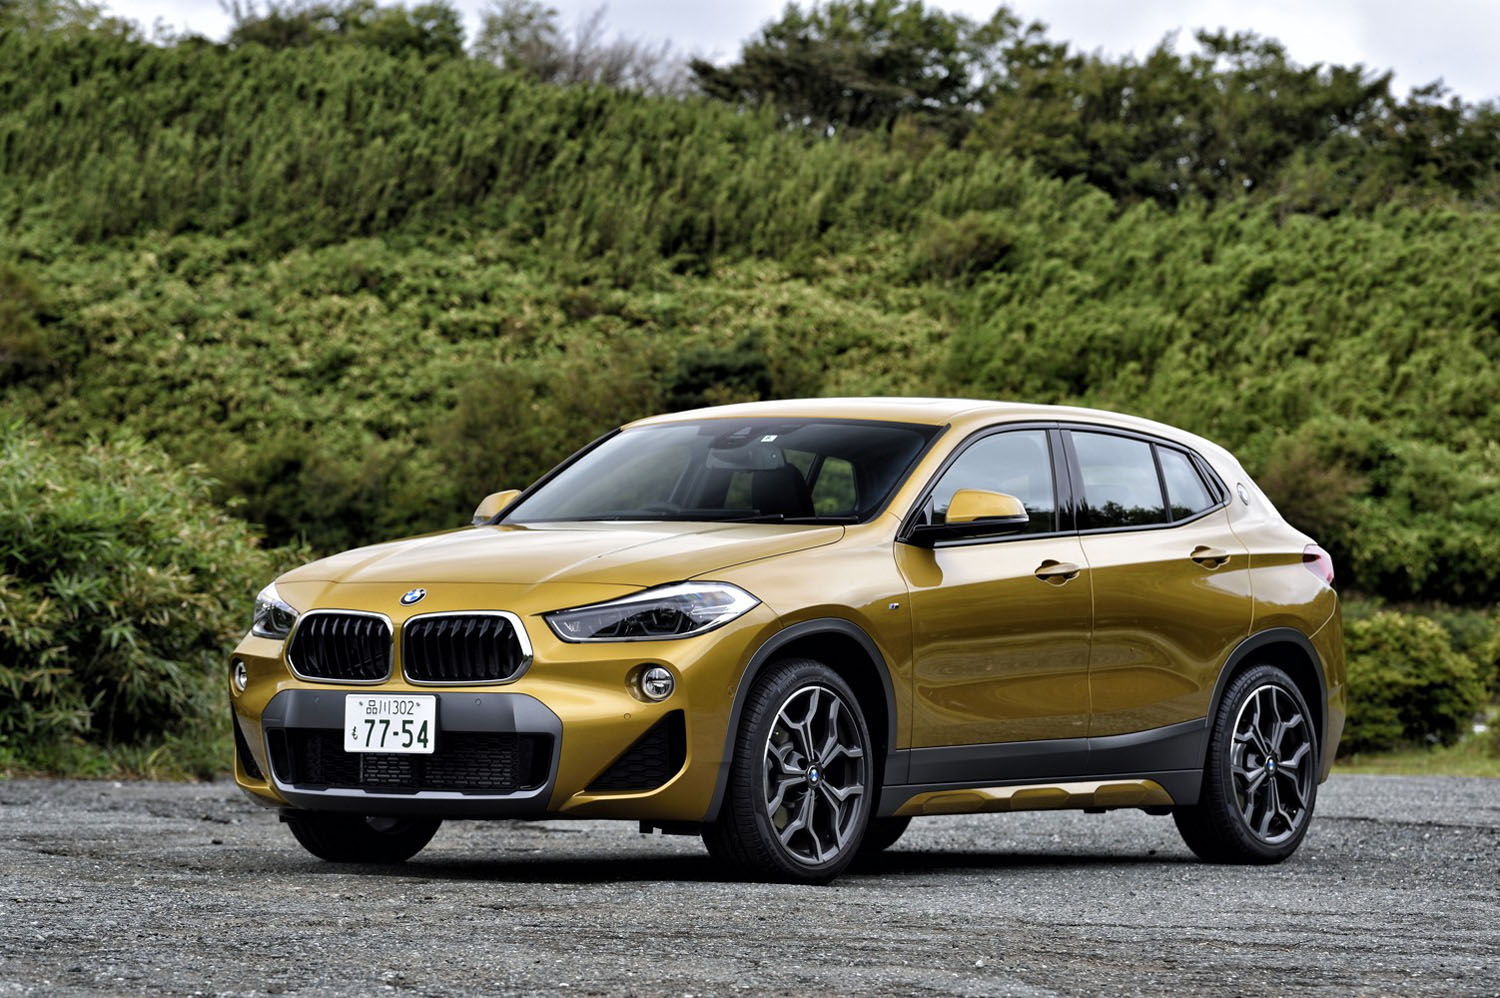 2020年6月8日に「BMW X2」のラインナップに加わった「xDrive20d MスポーツX」。今回の試乗車は、次世代車の普及をテーマにBMWのクリーンエネルギー車に設定された「エディションジョイ＋」グレードで、同モデルの装備をそのままに価格が25万円引き下げられている。